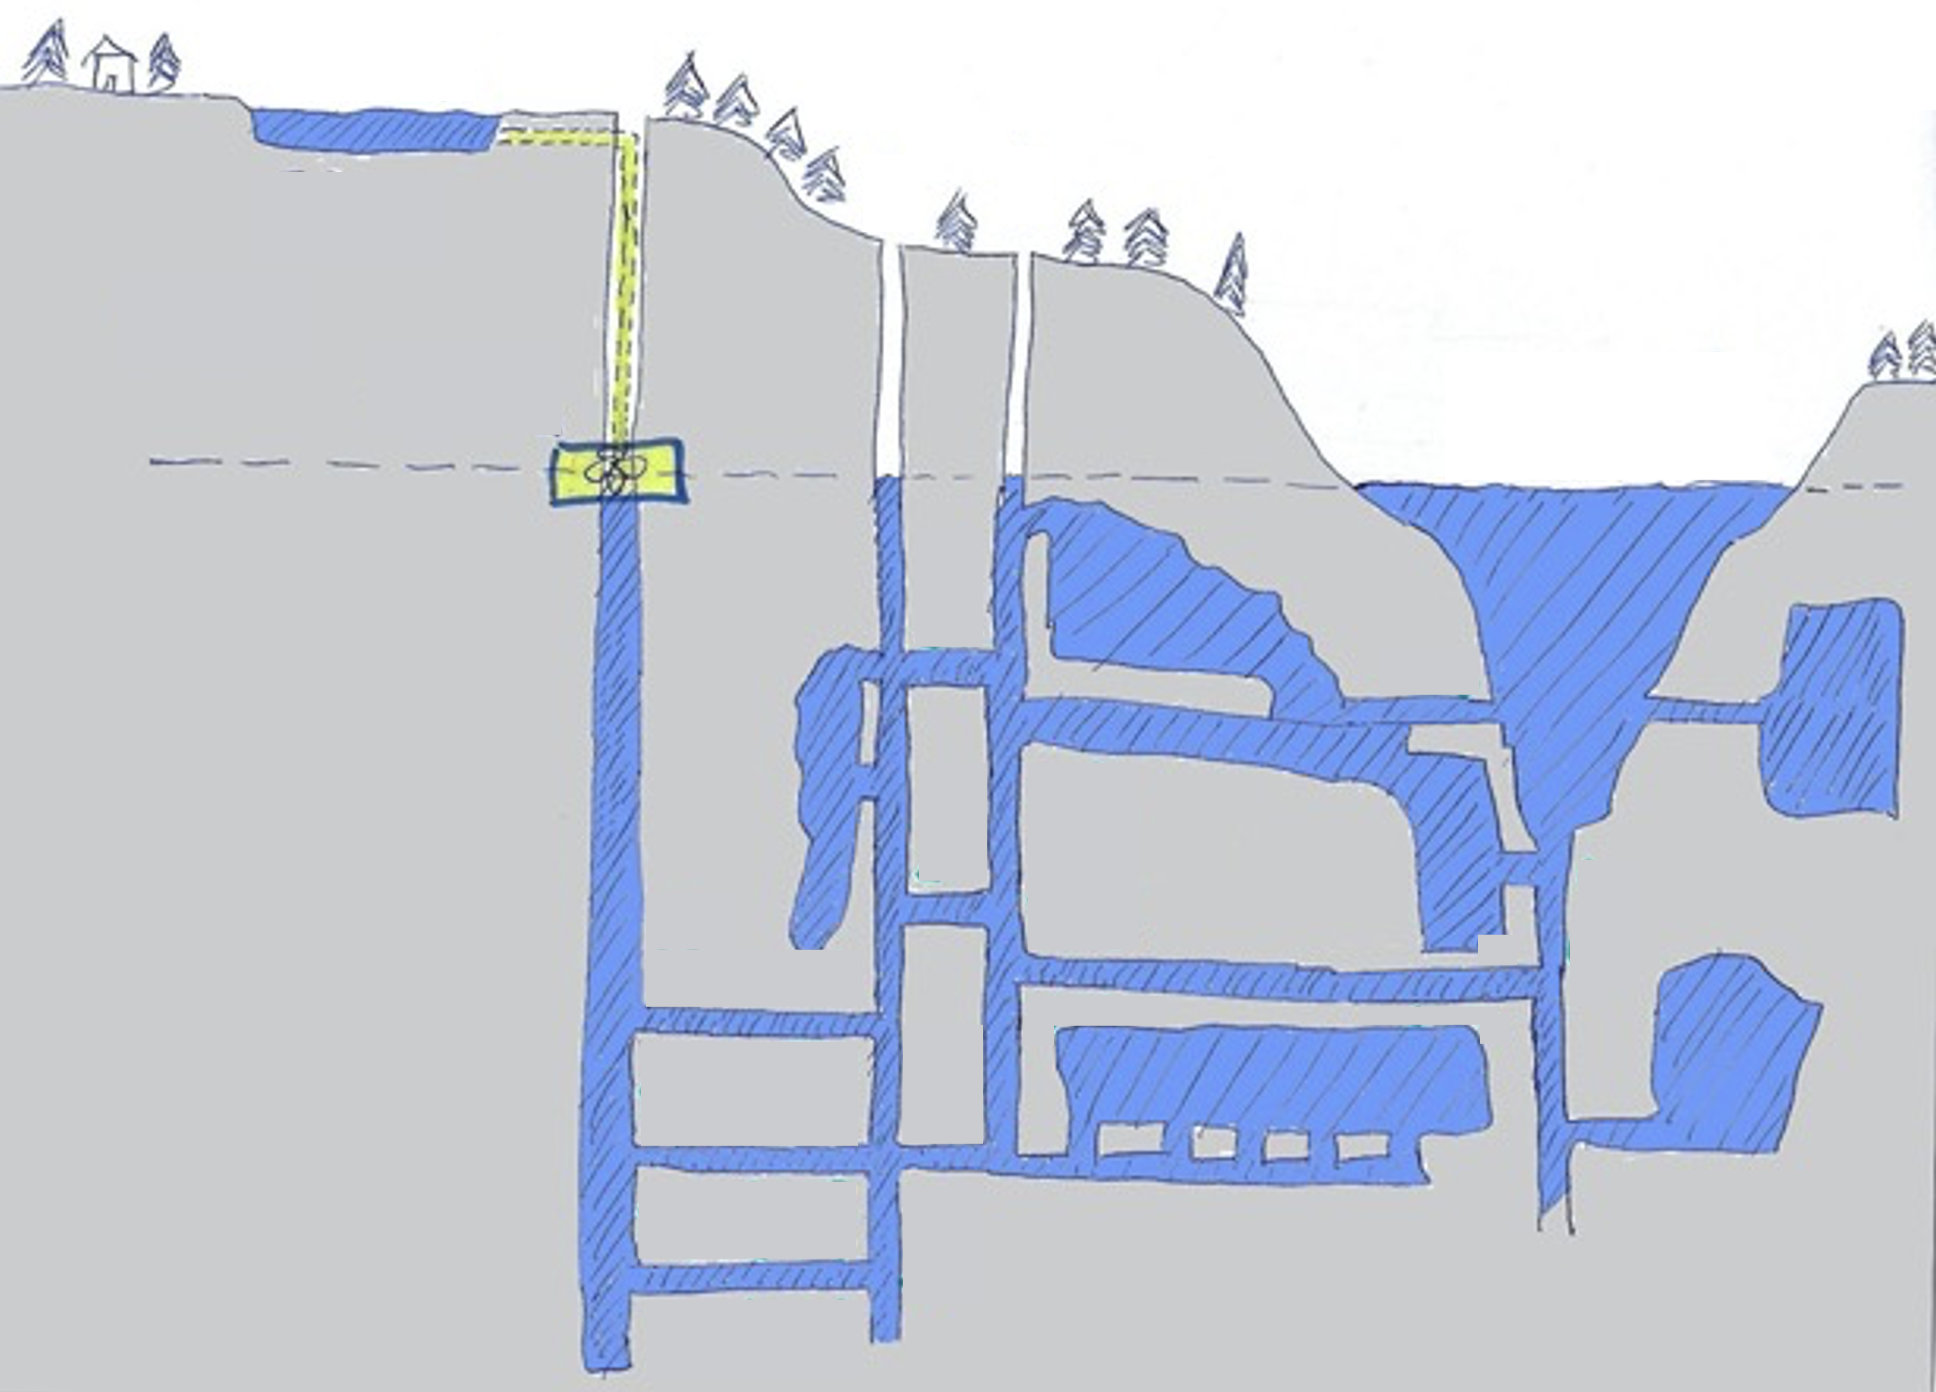 conceptual illustration of the Grängesberg mine storage